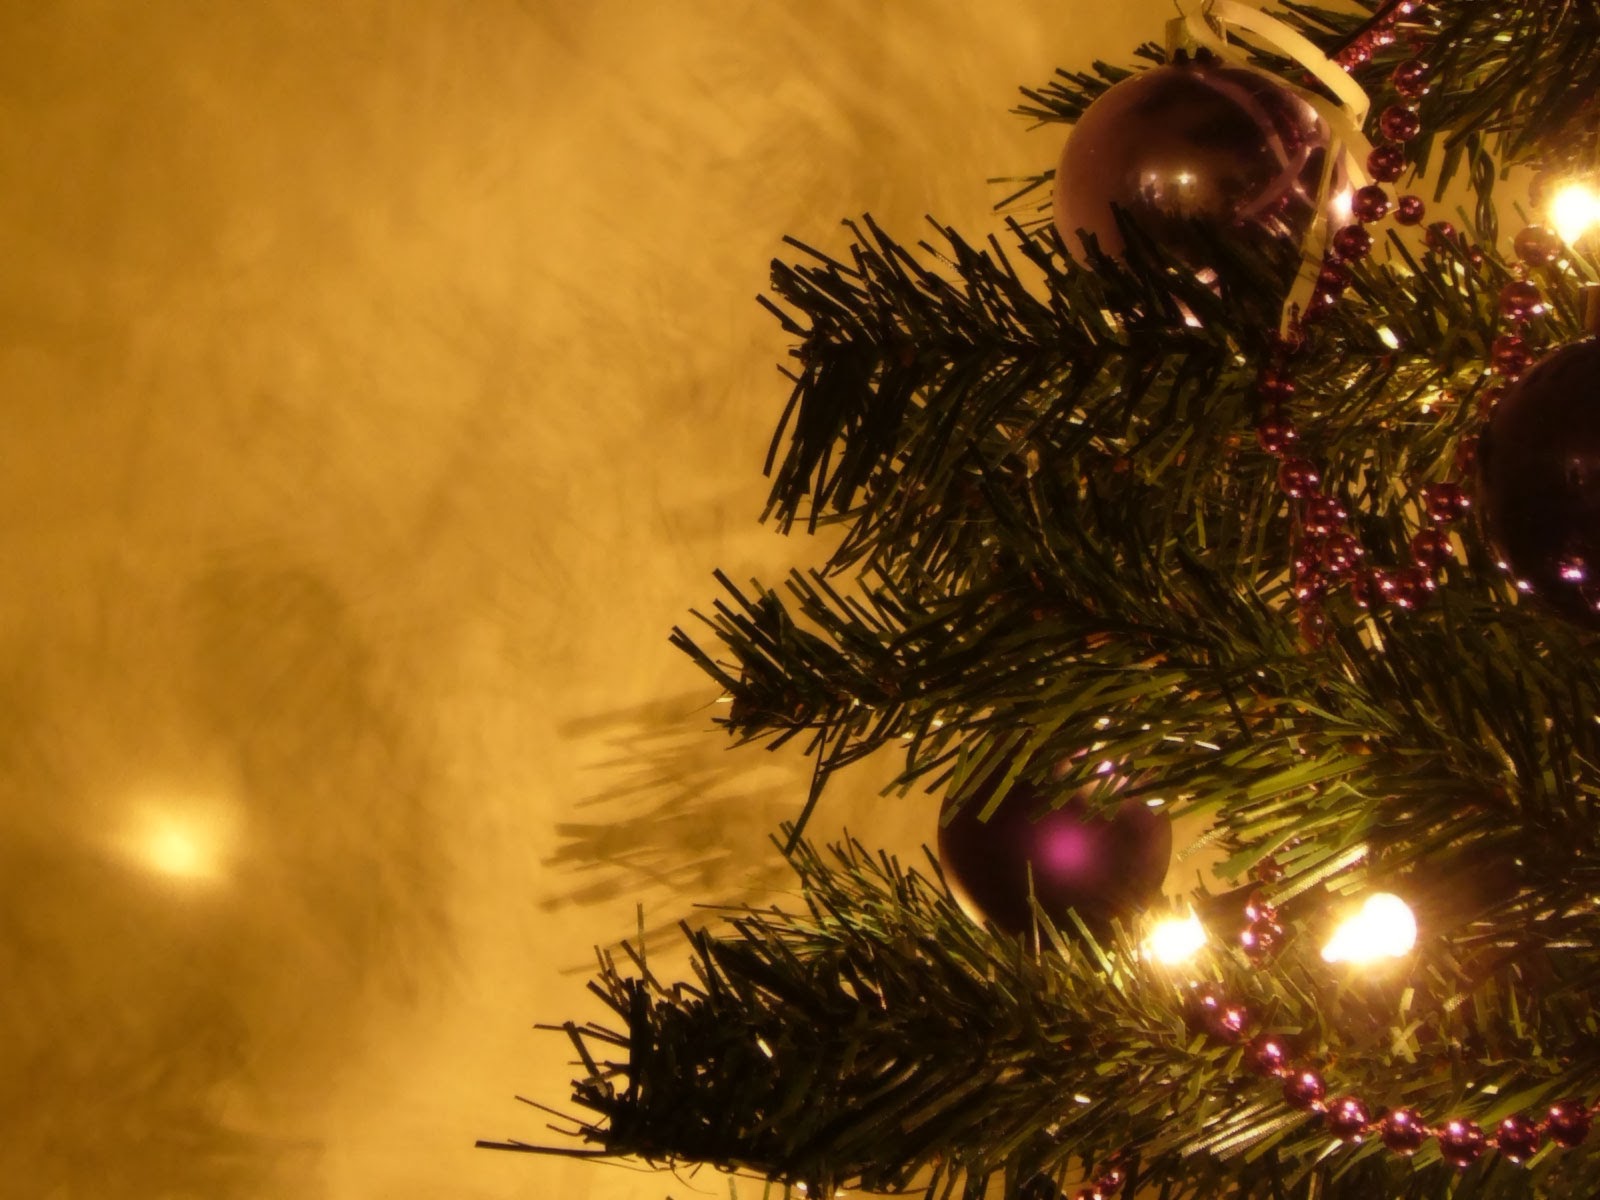 papel pintado noel,árbol de navidad,decoración navideña,árbol,decoración navideña,navidad